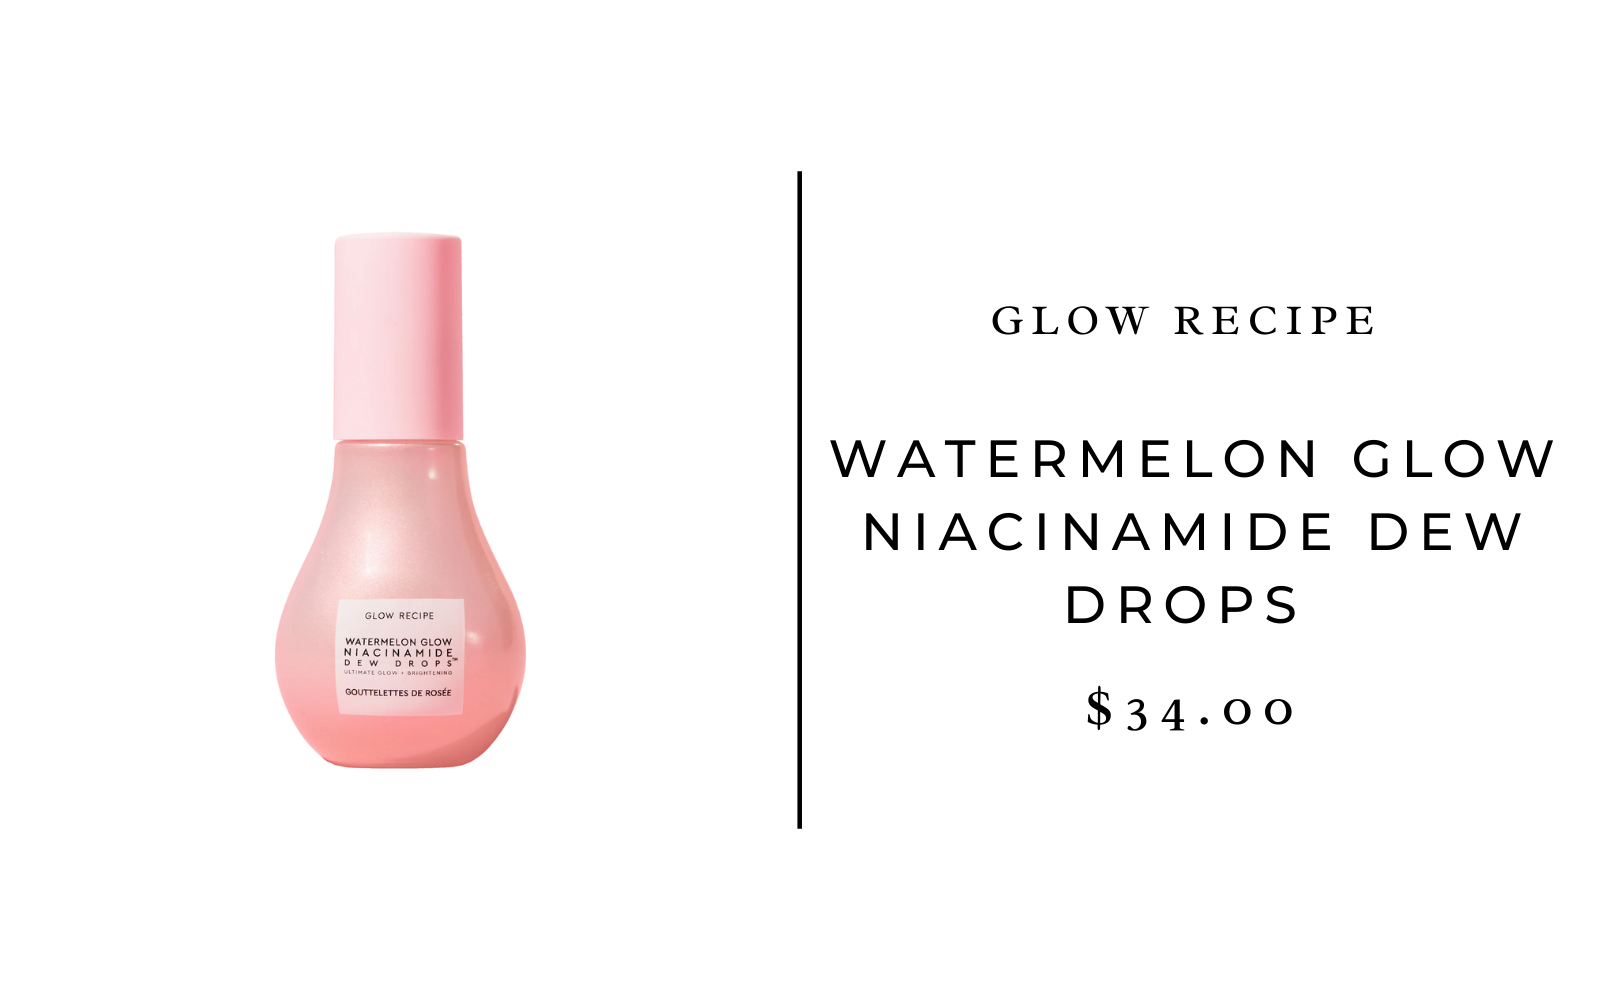 Glow Recipe Watermelon Glow Niacinamide Dew Drops